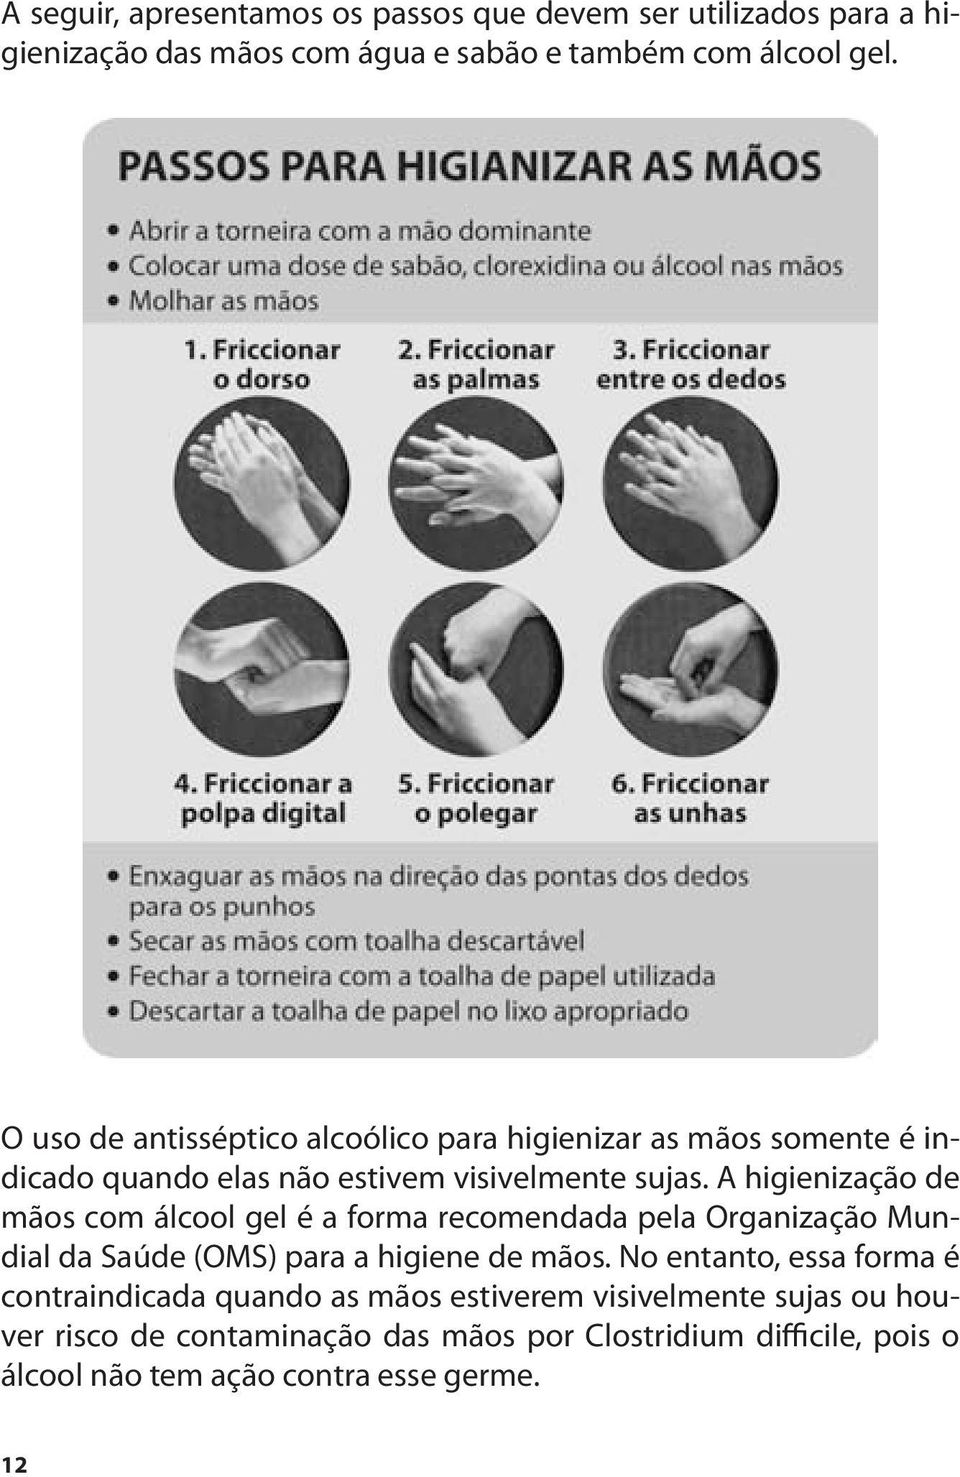 A higienização de mãos com álcool gel é a forma recomendada pela Organização Mundial da Saúde (OMS) para a higiene de mãos.